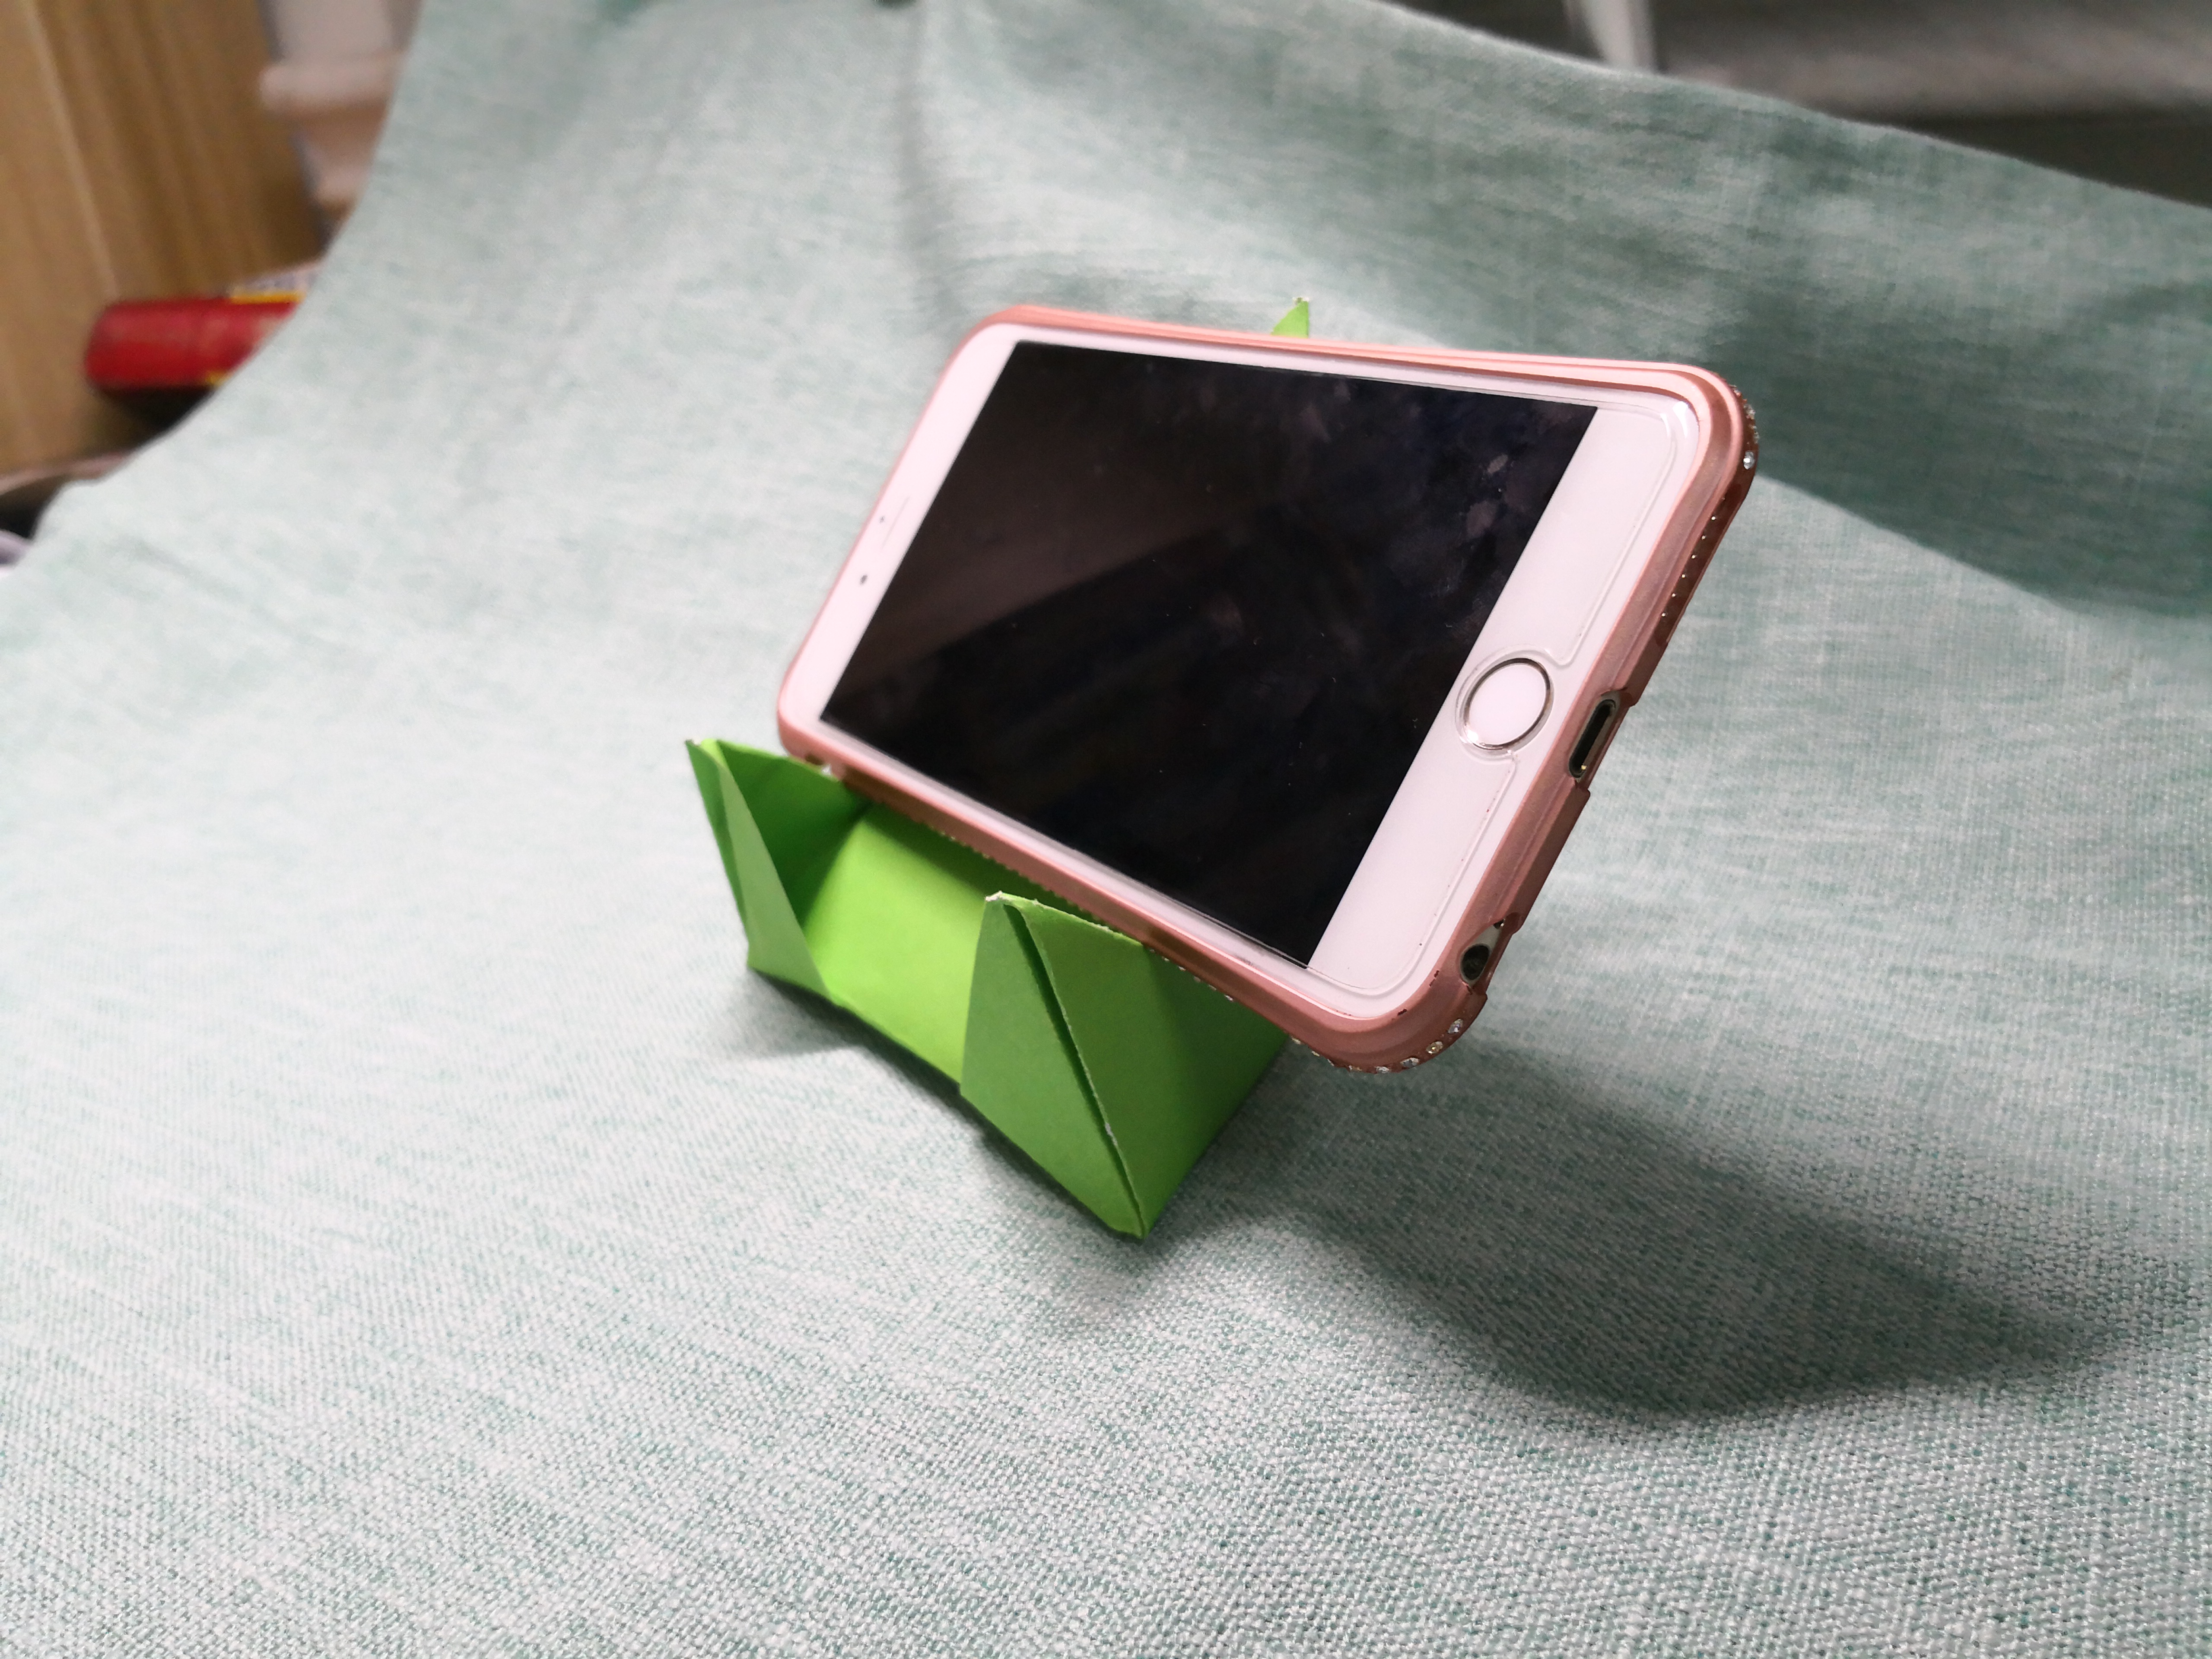 仅用一张a4纸折出手机支架,漂亮简单又实用的生活创意折纸